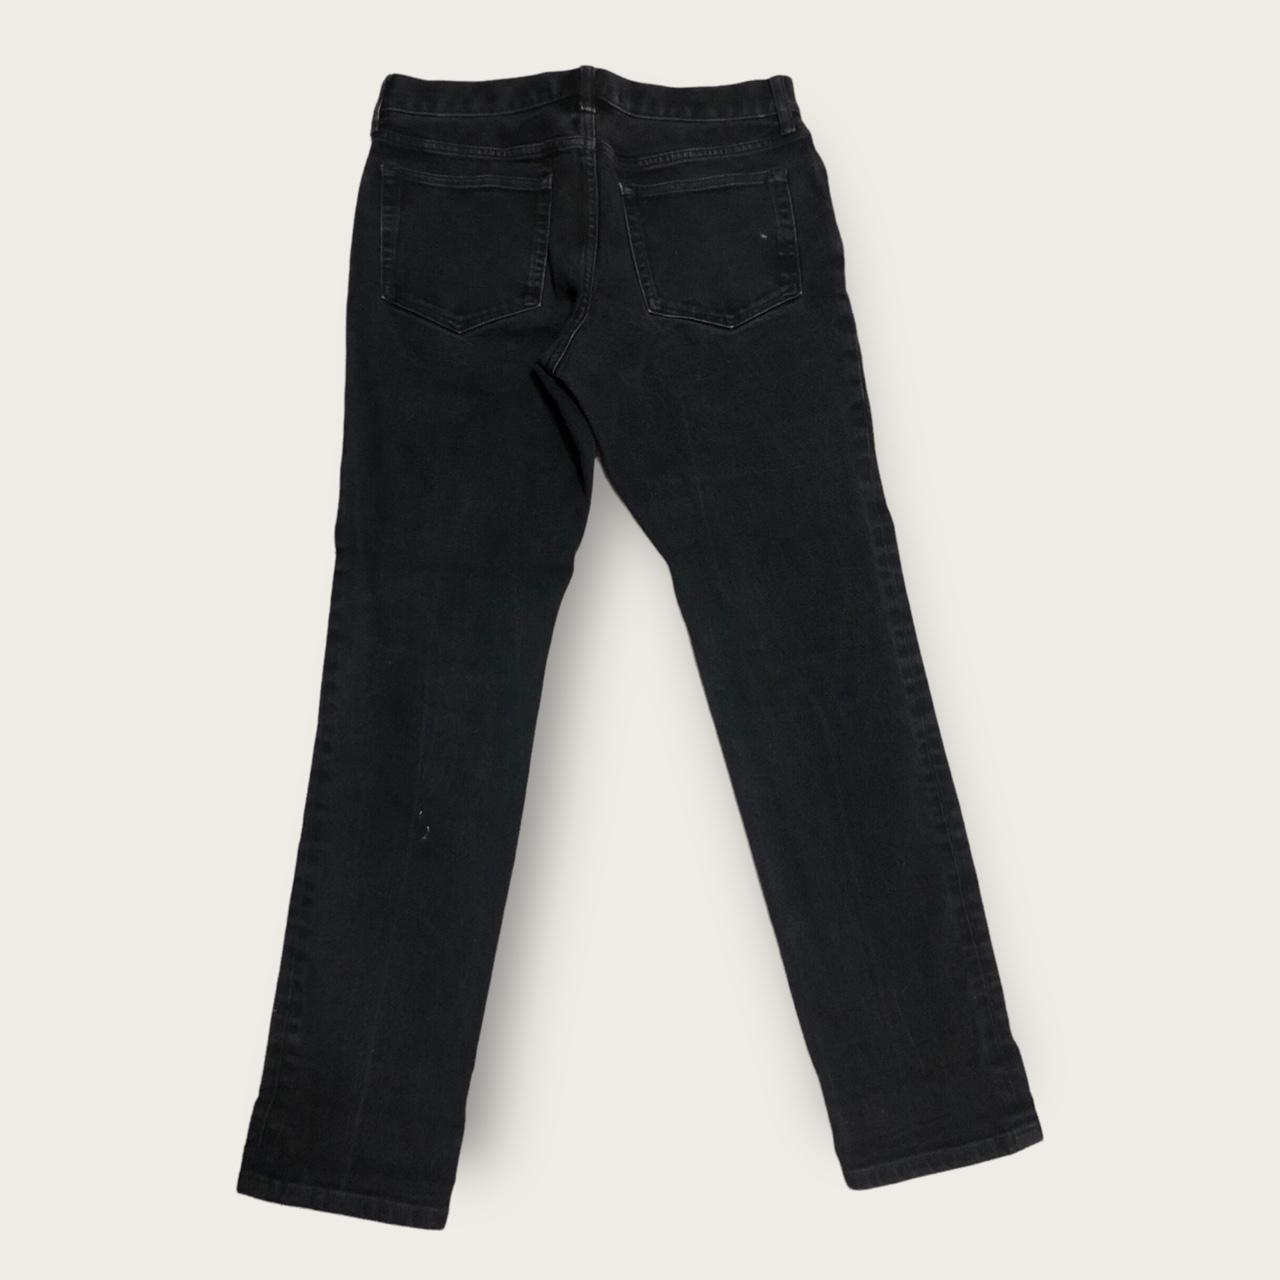 Black Everlane jeans 30x30 Ask for measurements! - Depop